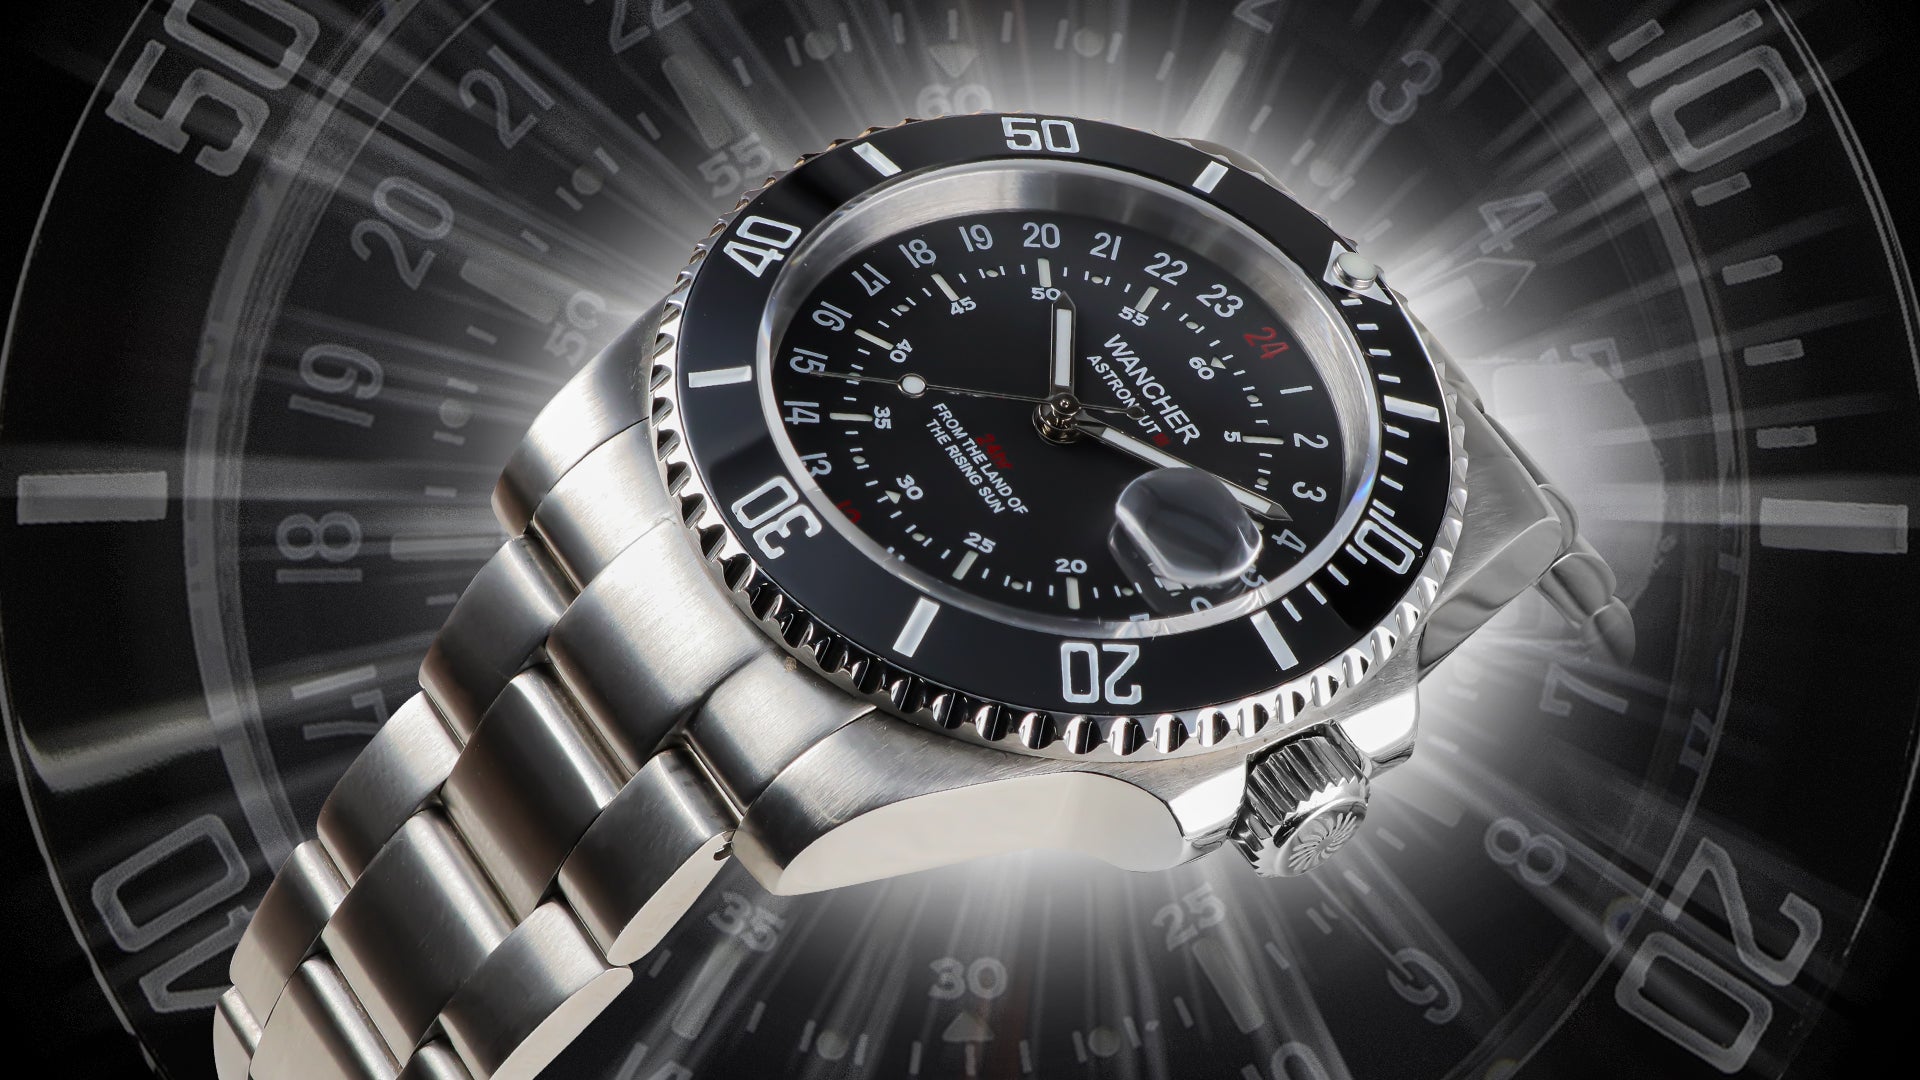 Wancher Watch Astronaut 3 24 hour automatic wrist watch 